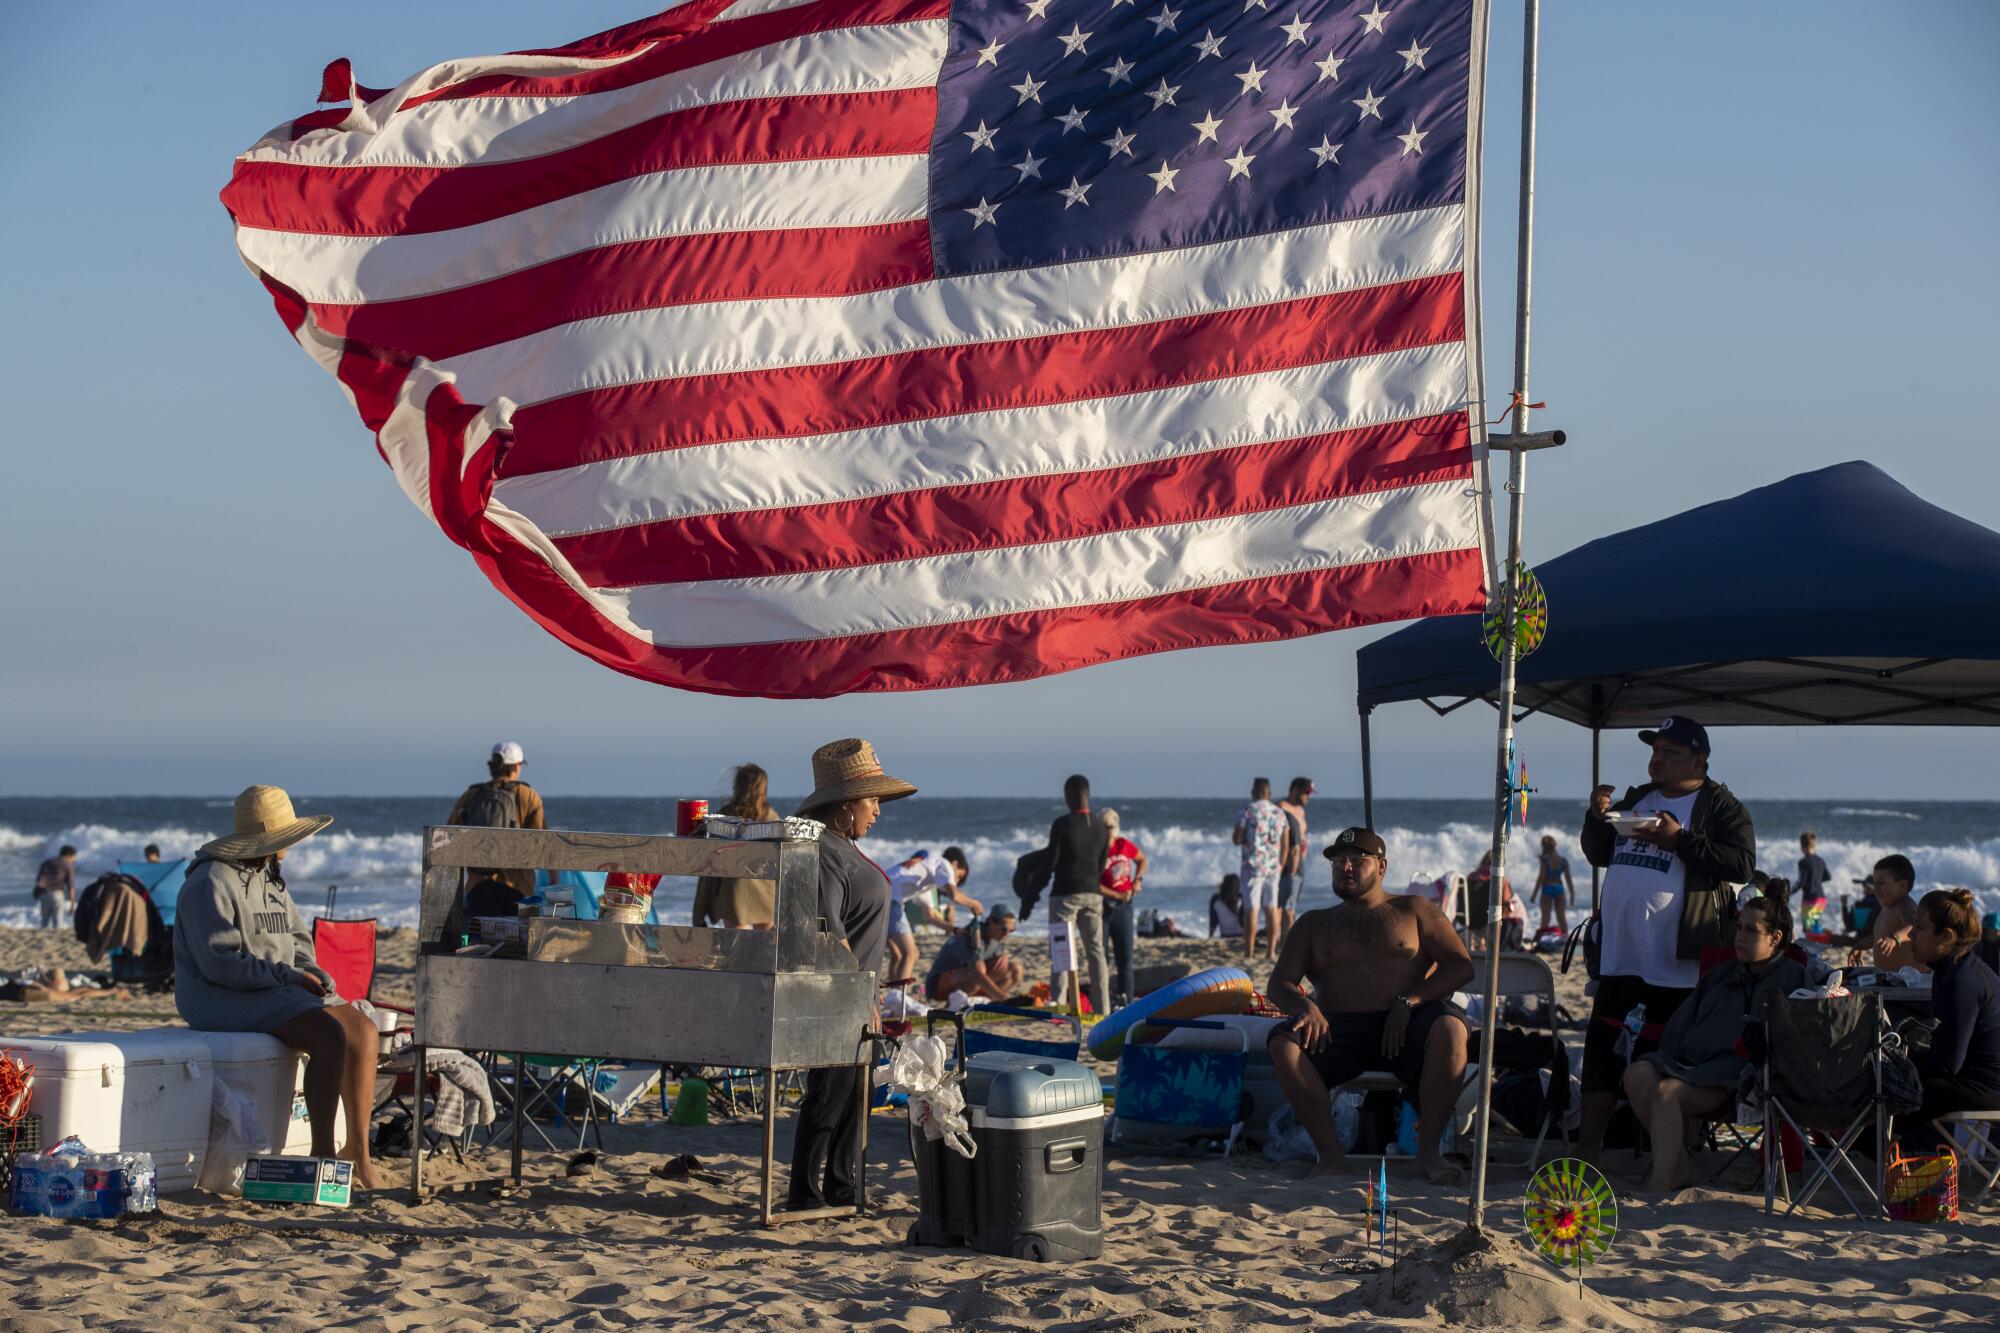 A big U.S. flag flies near a gathering on the beach